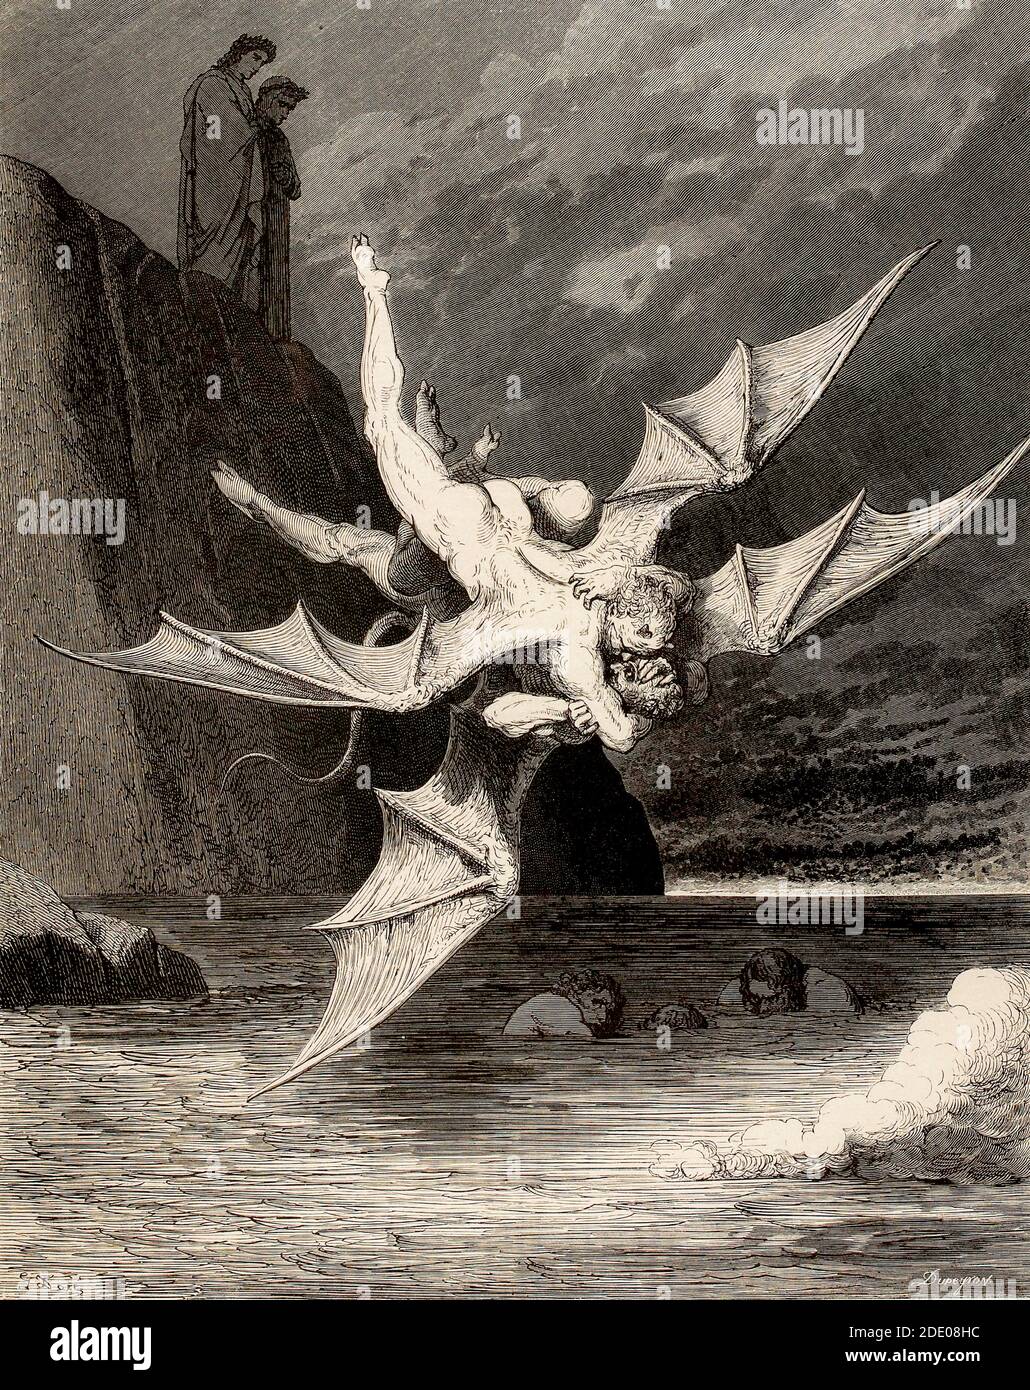 Dante Divina Commedia - Inferno - XXII canto - Spuffle Dei Diavoli - VIII cerchio - illustrazione di Gustave Dorè Foto Stock